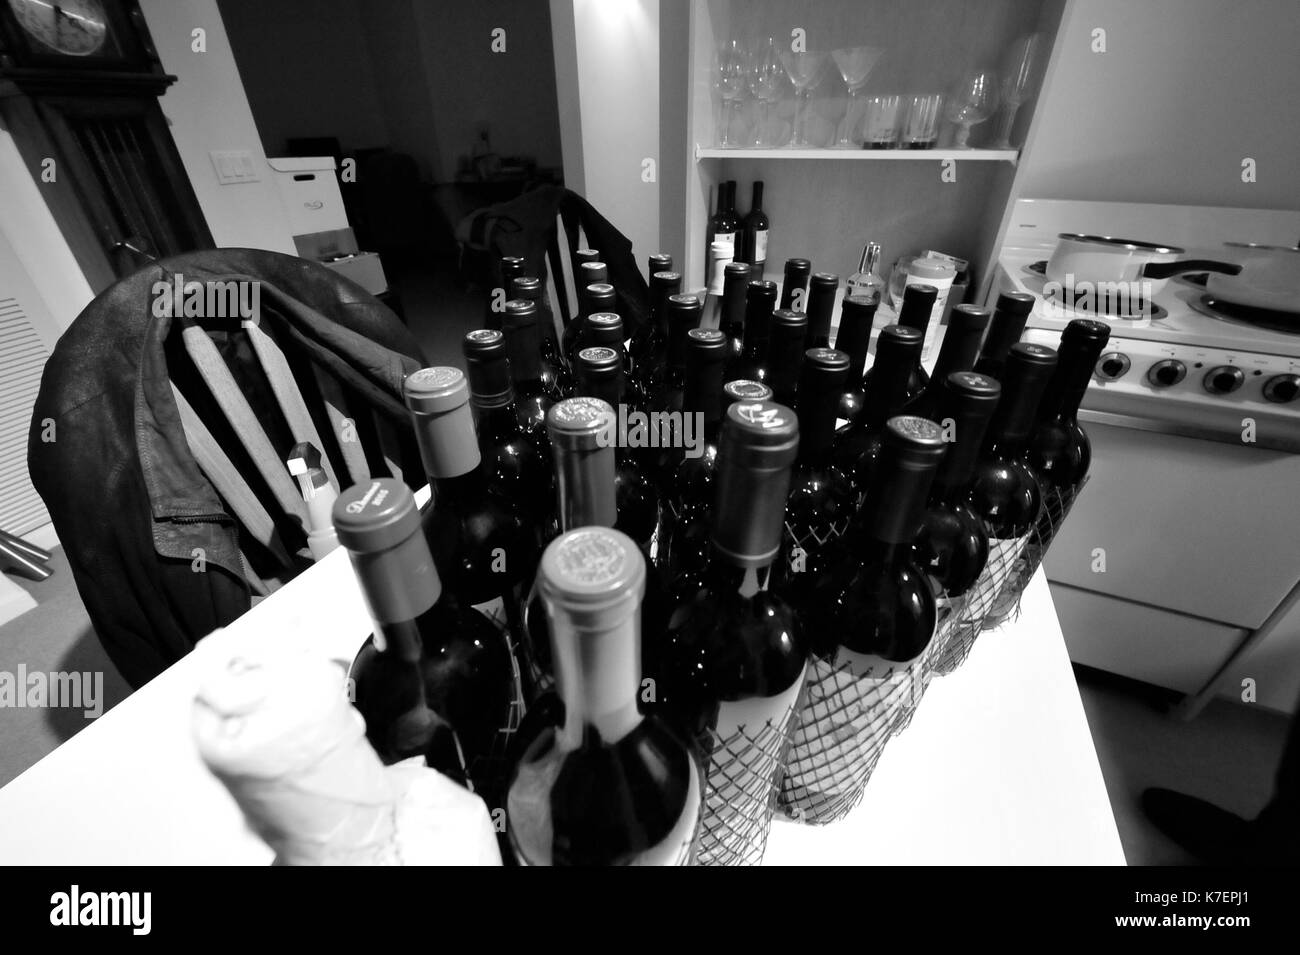 Photo en noir et blanc de bouteilles de vin sur un comptoir de cuisine Banque D'Images